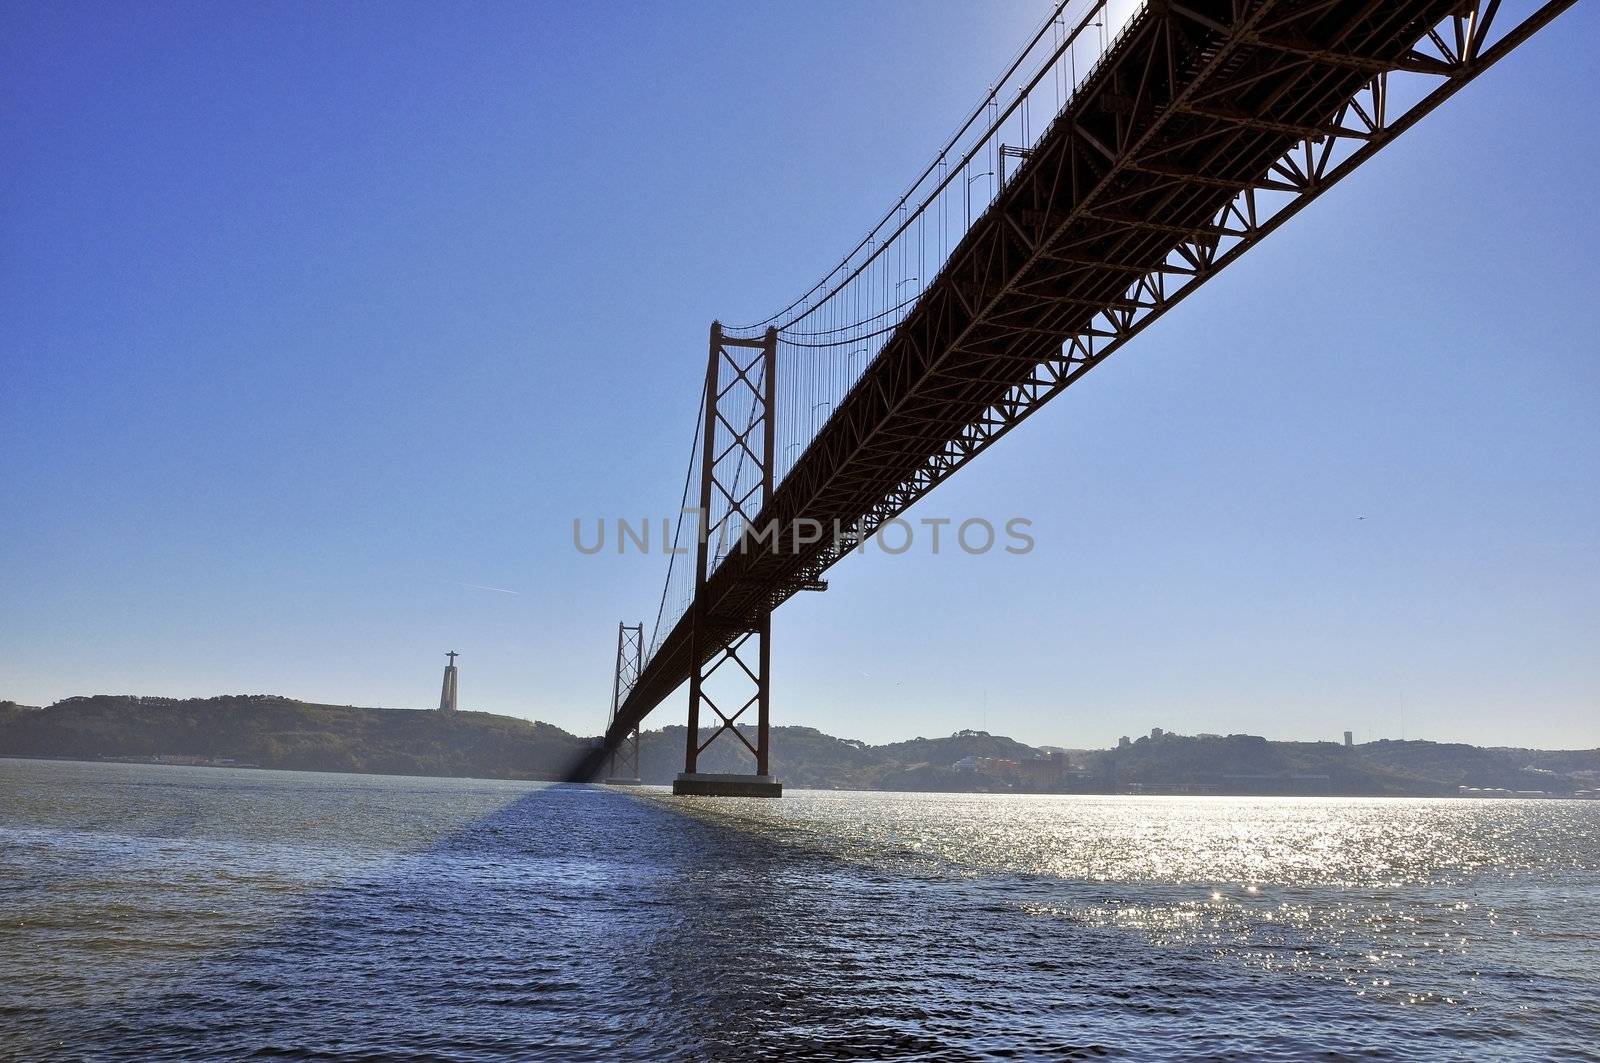 Portugal Lisbon Bridge on April 25 architecture